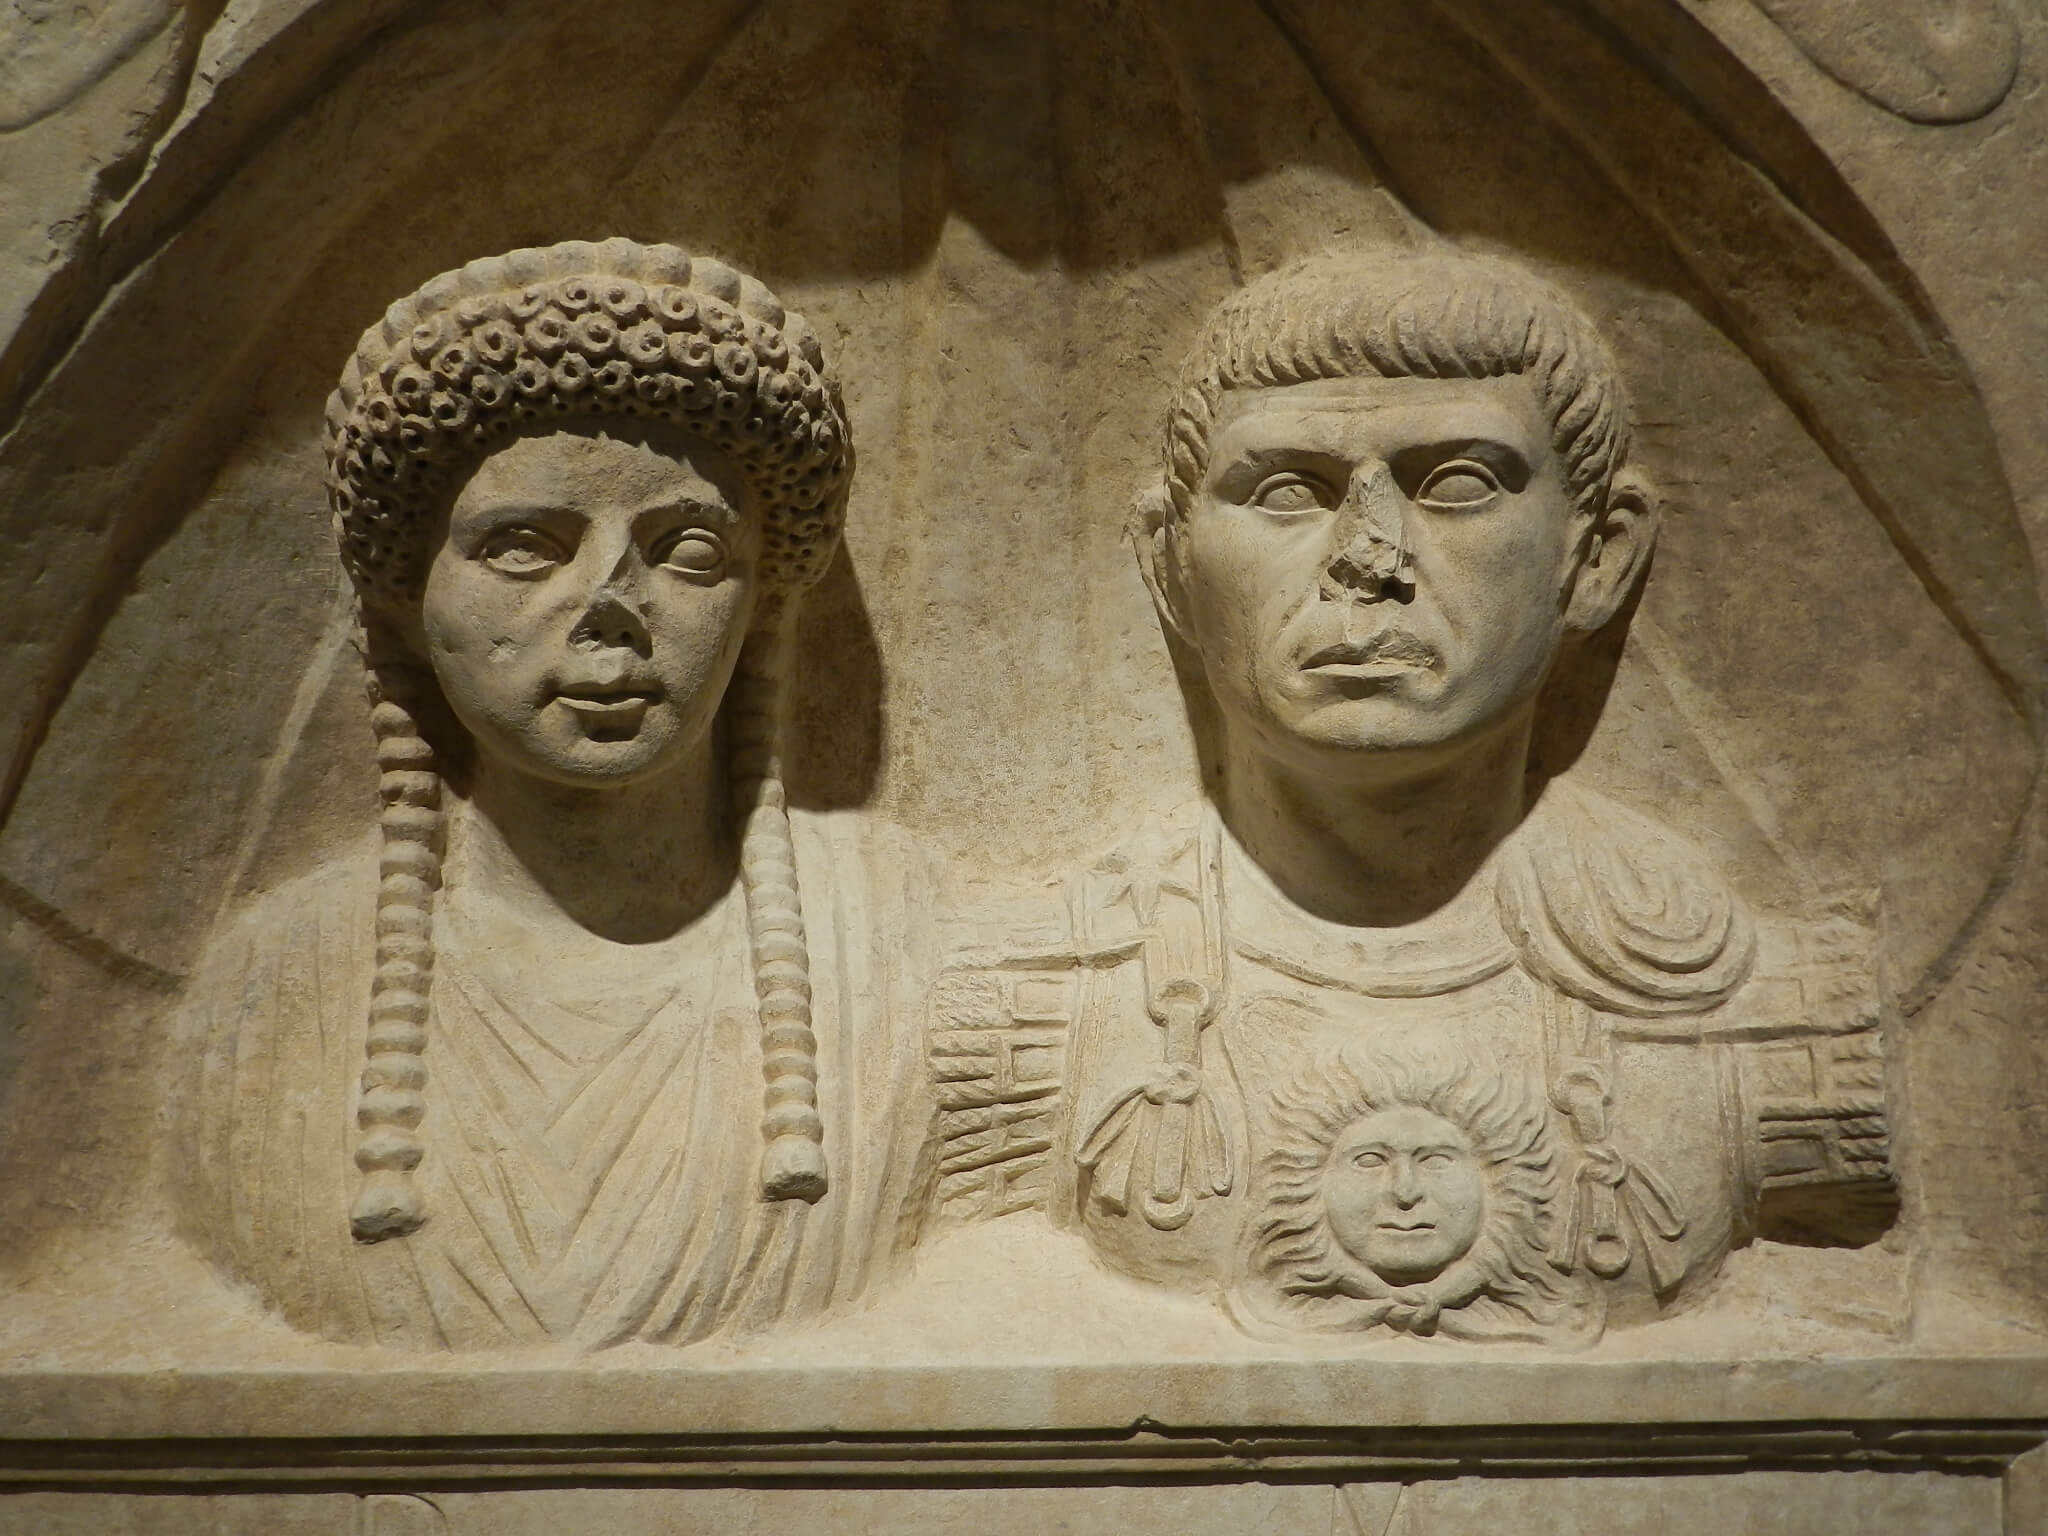 L’Empereur romain : un mortel parmi les dieux